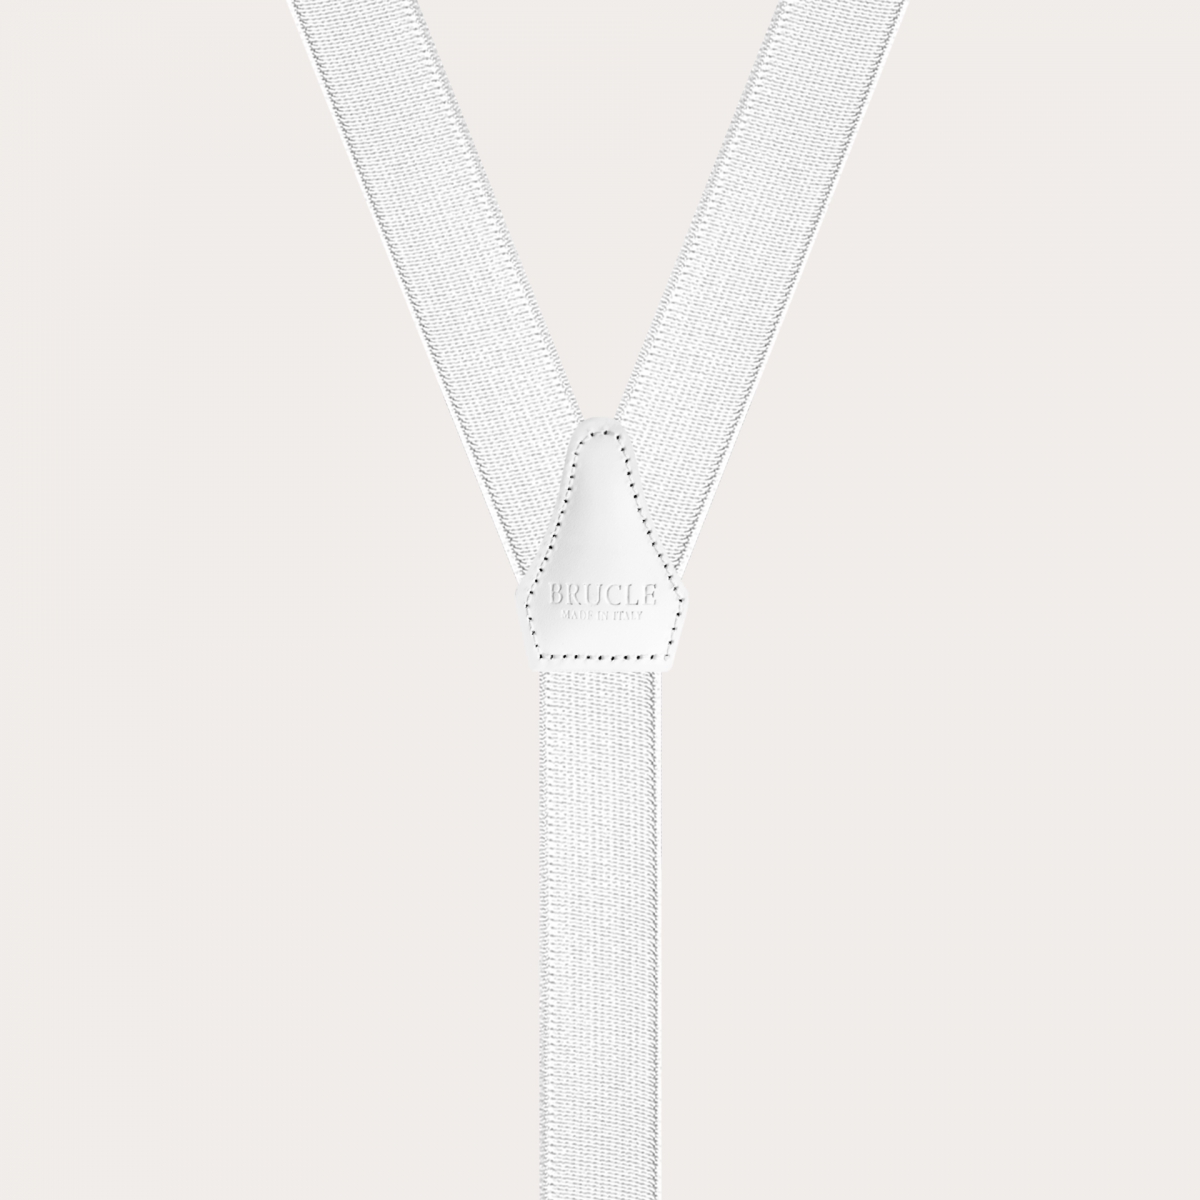 BRUCLE Bretelle bianche in raso elastico con asole